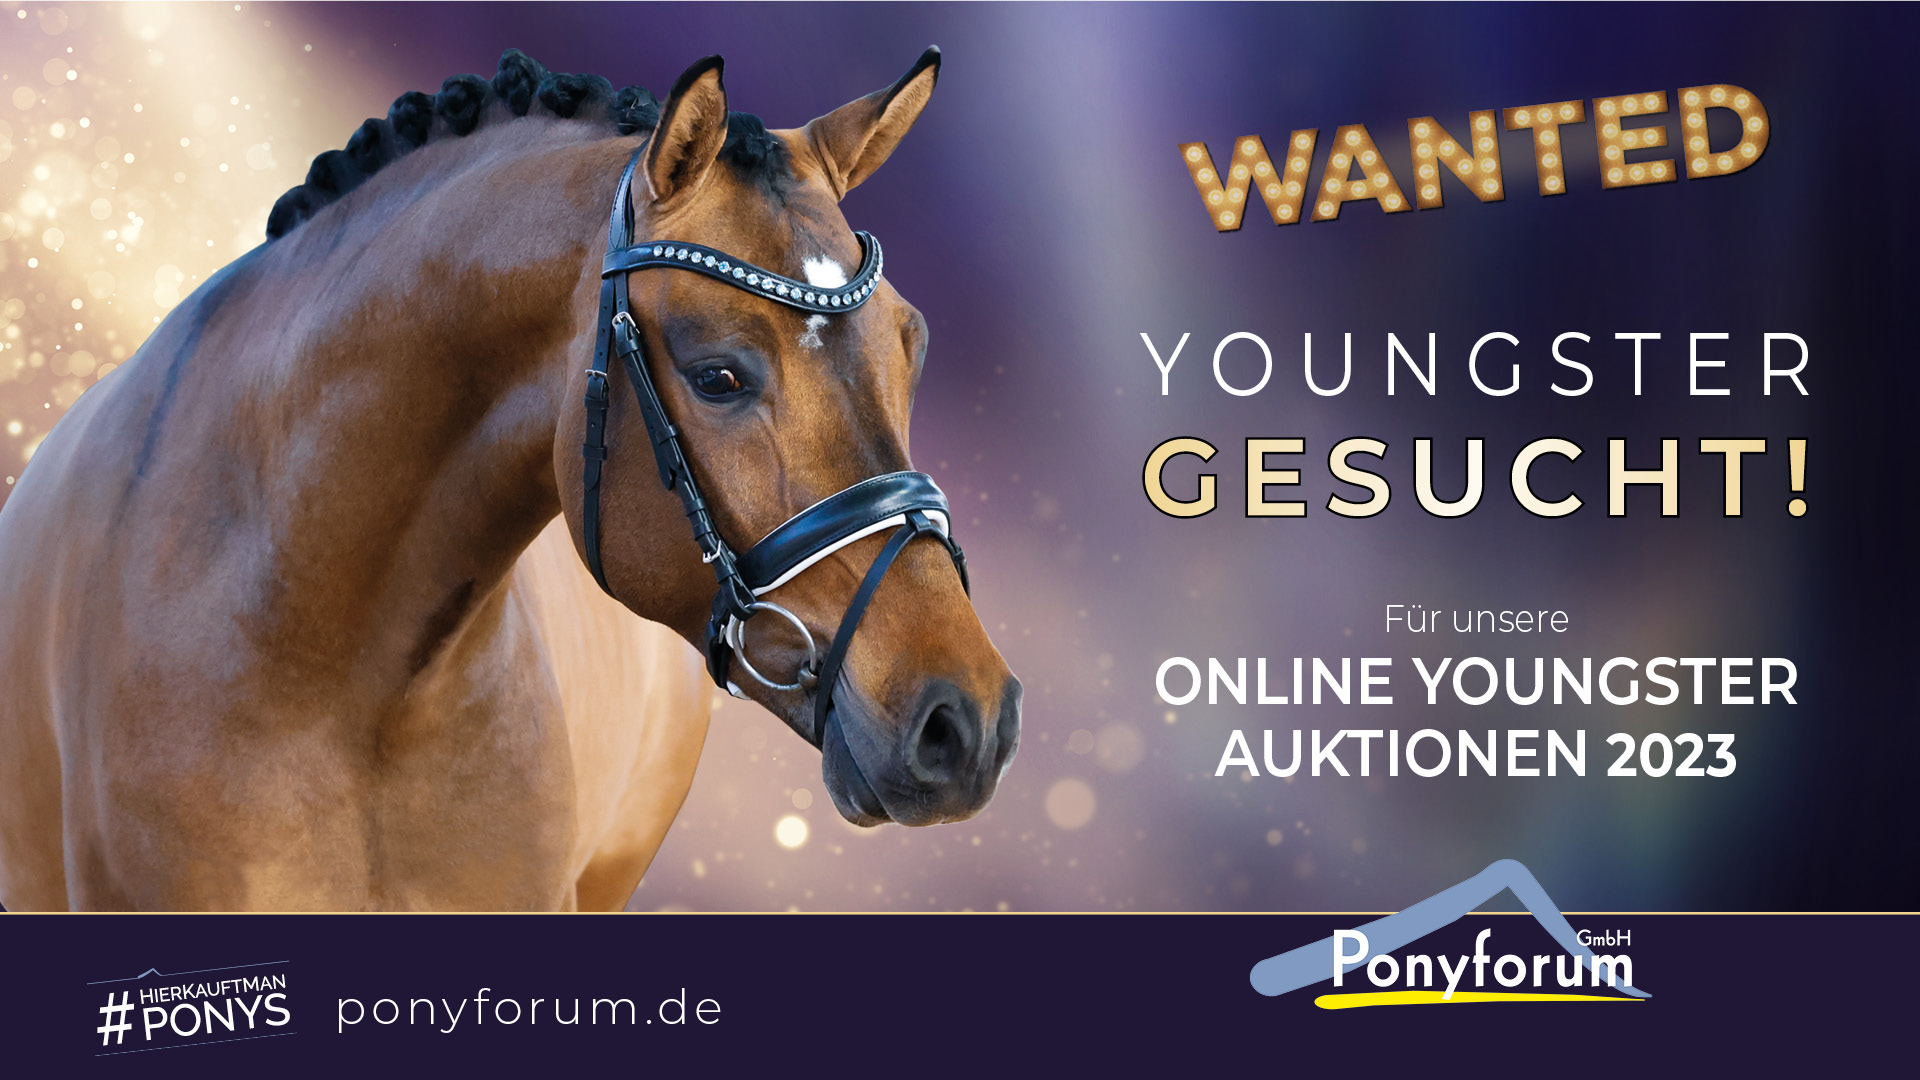 Ponyforum GmbH: Youngster gesucht für Juni-Auktion